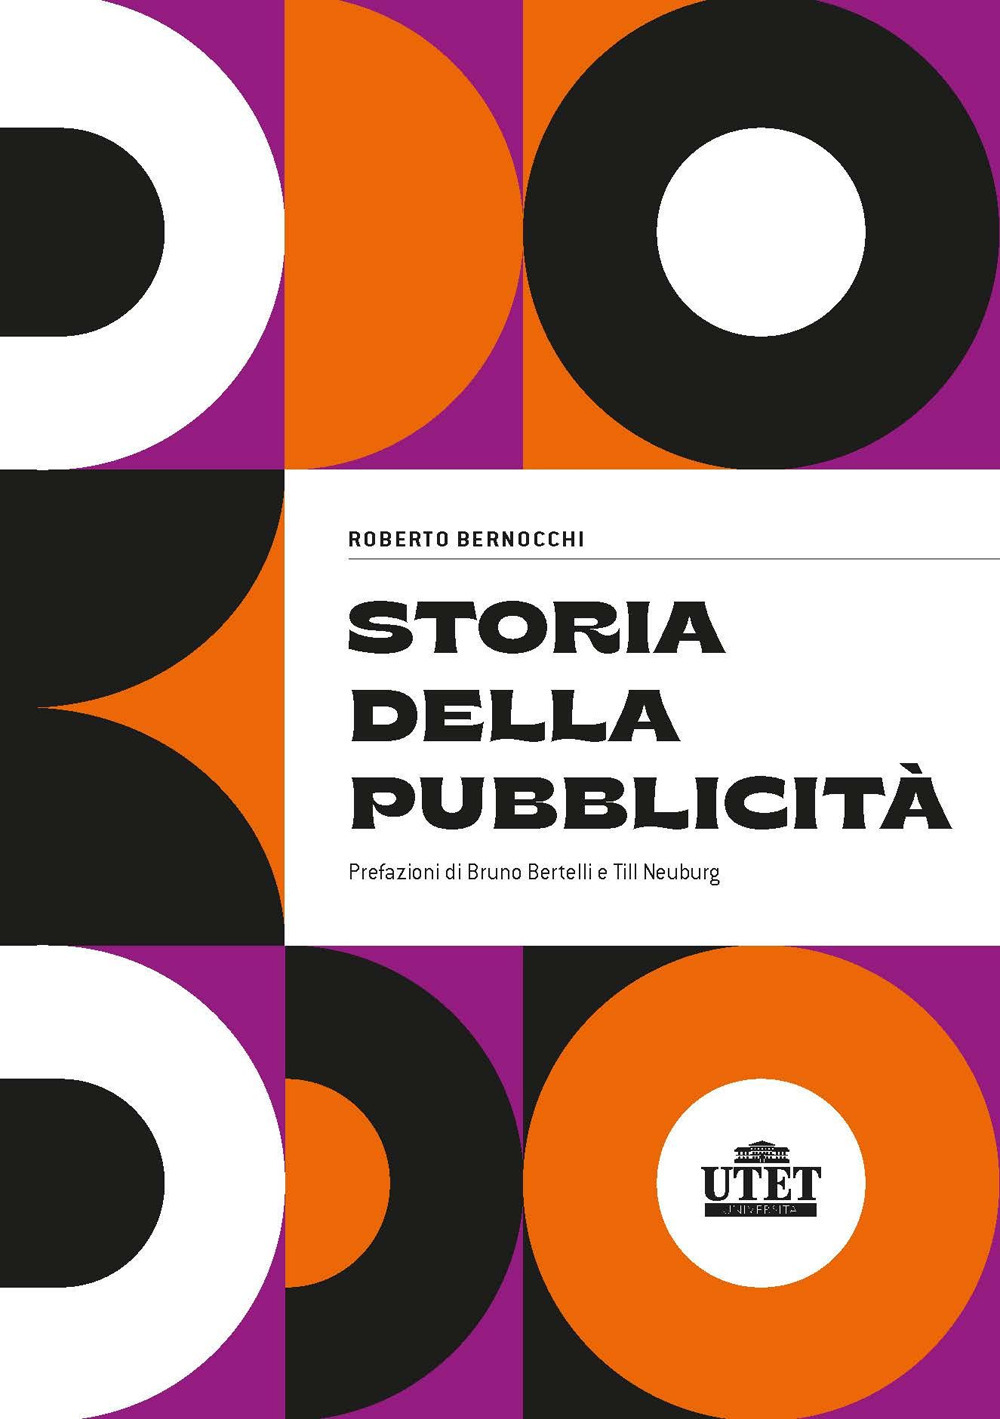 Libri Roberto Bernocchi - Storia Della Pubblicita NUOVO SIGILLATO, EDIZIONE DEL 03/05/2022 SUBITO DISPONIBILE